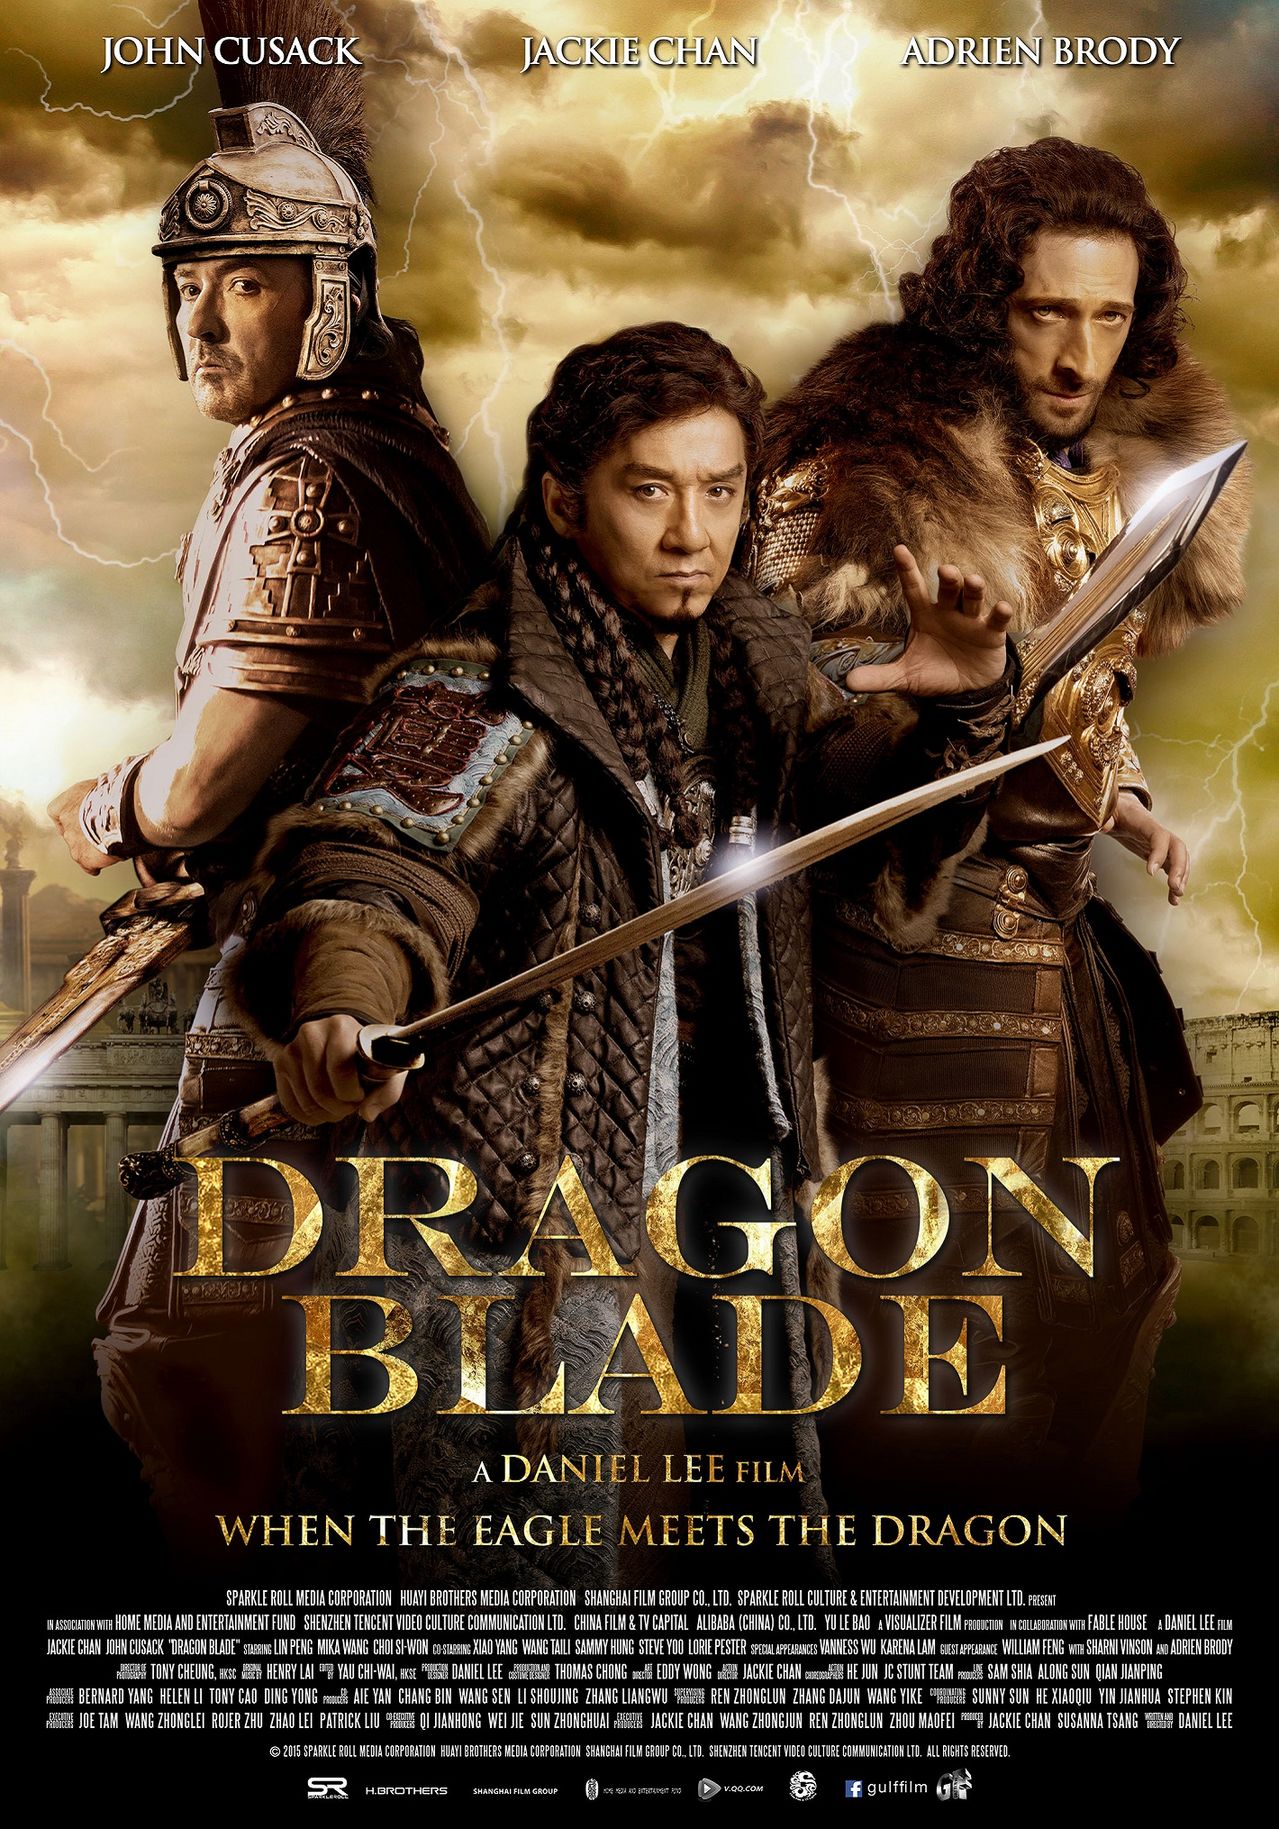 Drakono kardas / Tian jiang xiong shi / Dragon Blade (2015)